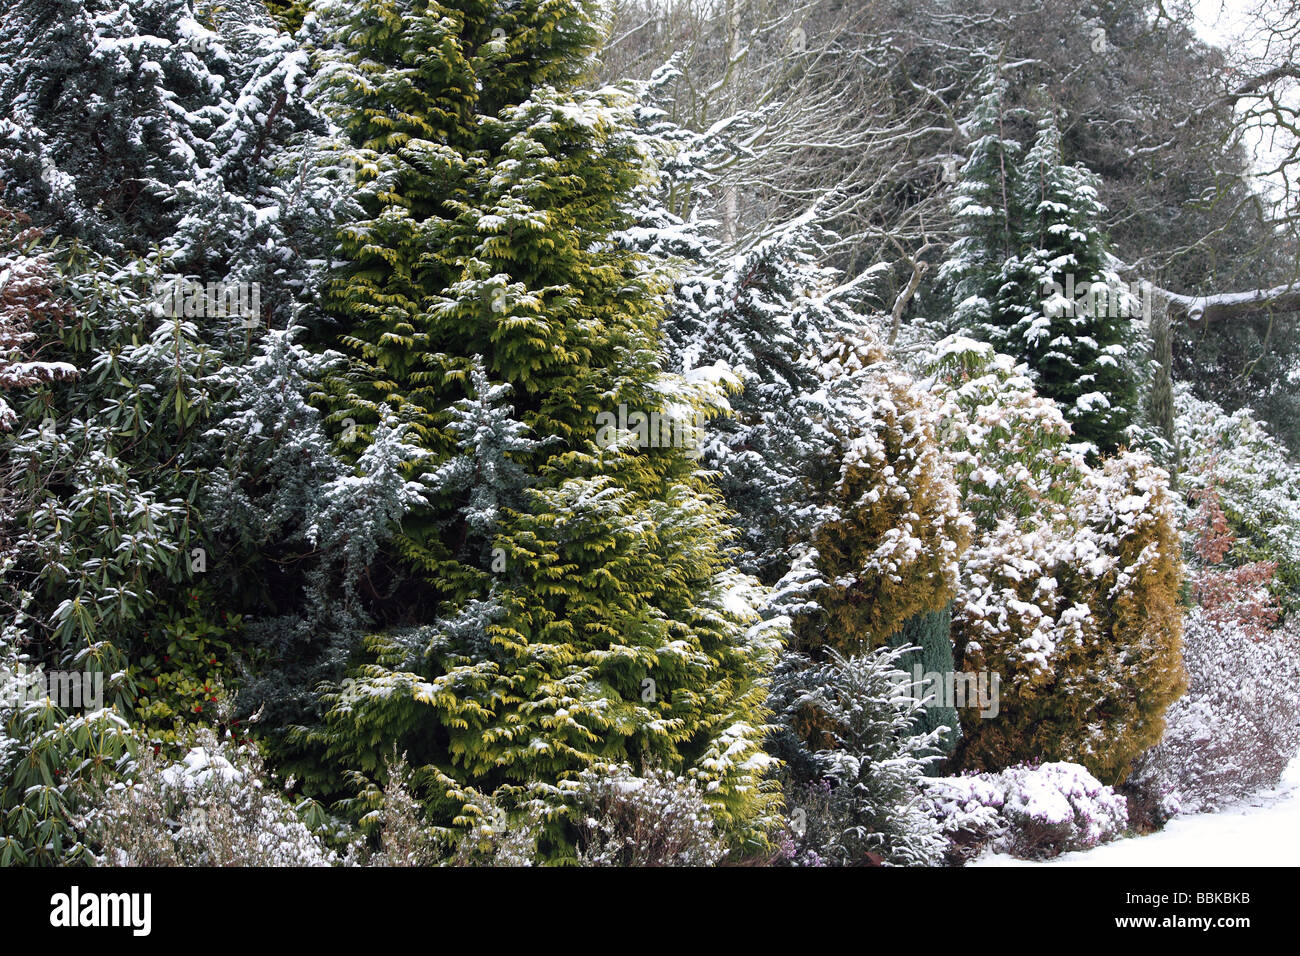 Un pays sur scène un hivers froid jour après la neige s'est installé dans un parc de pays Banque D'Images